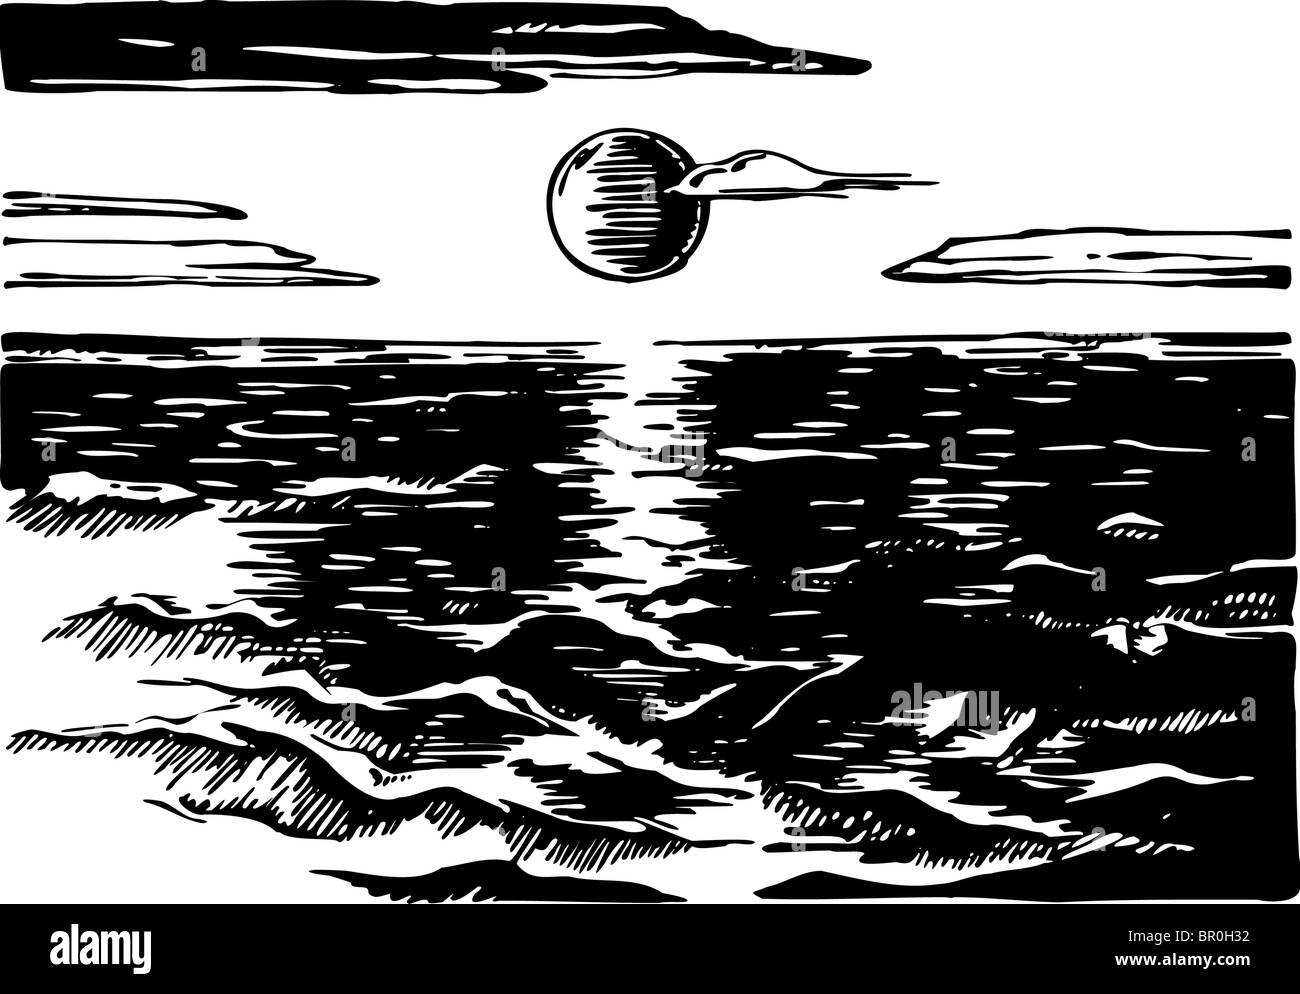 Un Dibujo En Blanco Y Negro Del Oceano Al Atardecer Fotografia De